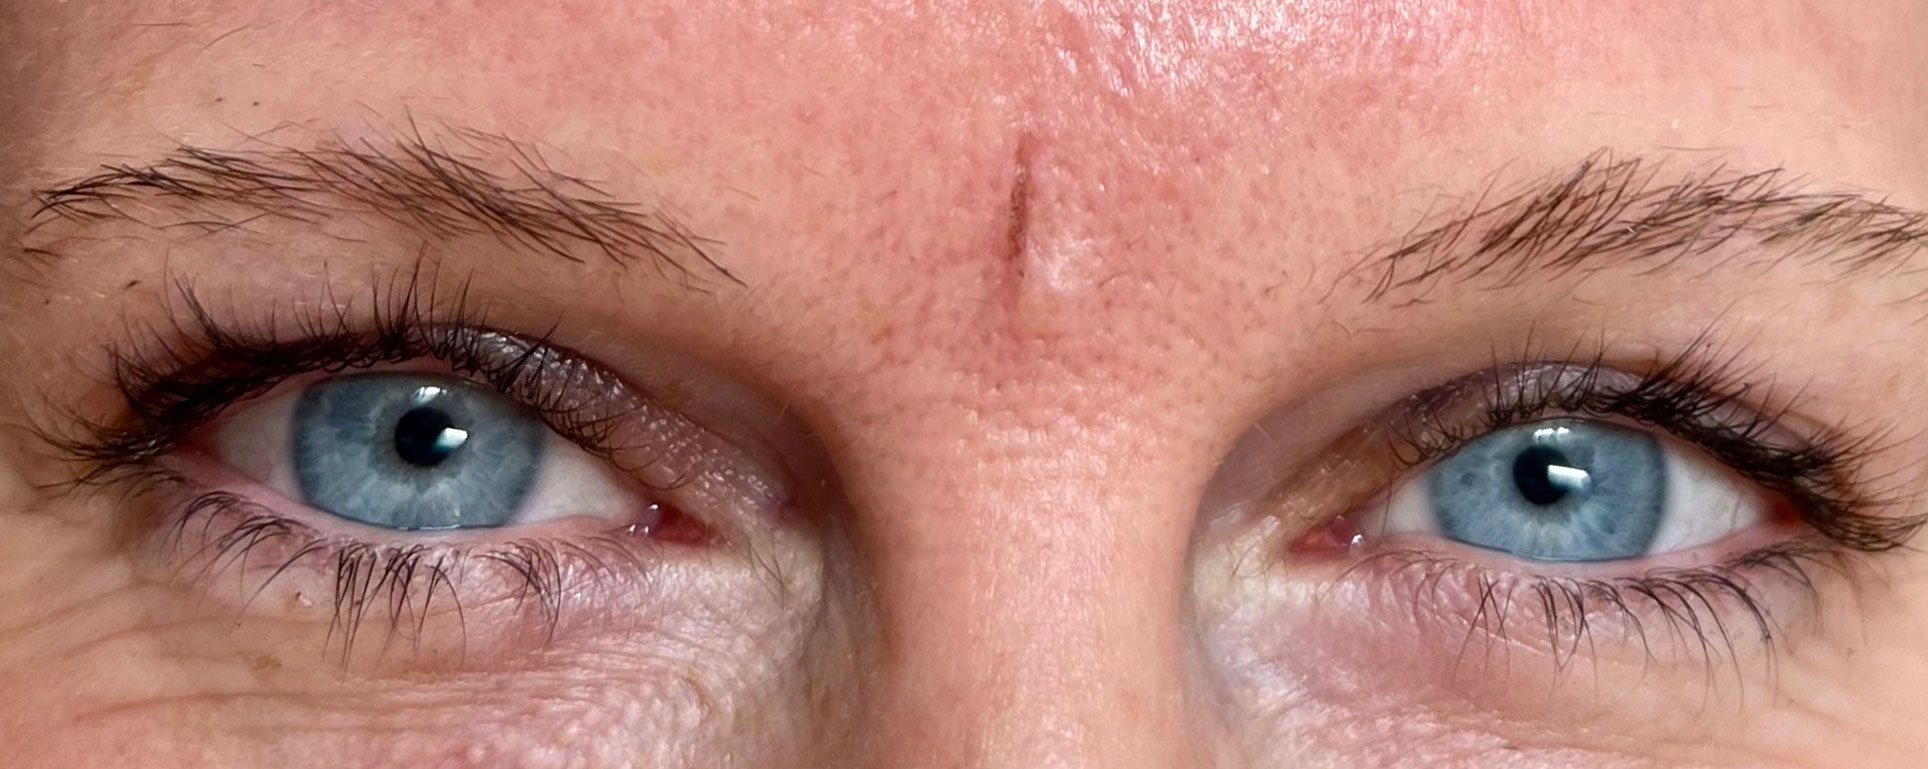 Eine Nahaufnahme der Augen einer Frau mit Microblading auf den Augenbrauen und blauen Augen.